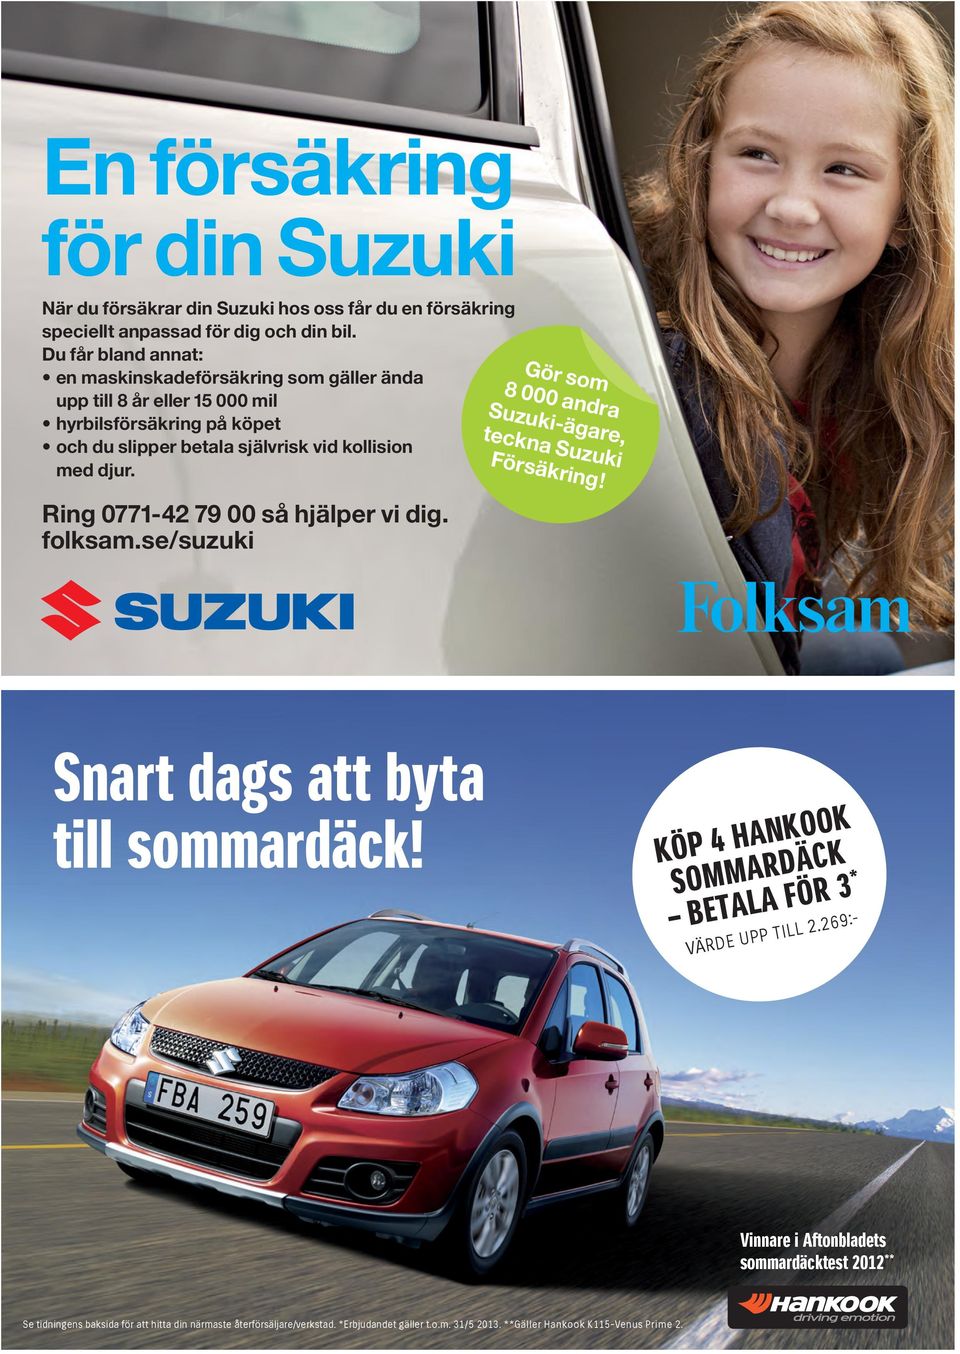 Ring 0771-42 79 00 så hjälper vi dig. folksam.se/suzuki 8 000 andra Suzuki-ägare, teckna Suzuki Försäkring! Snart dags att byta till sommardäck!